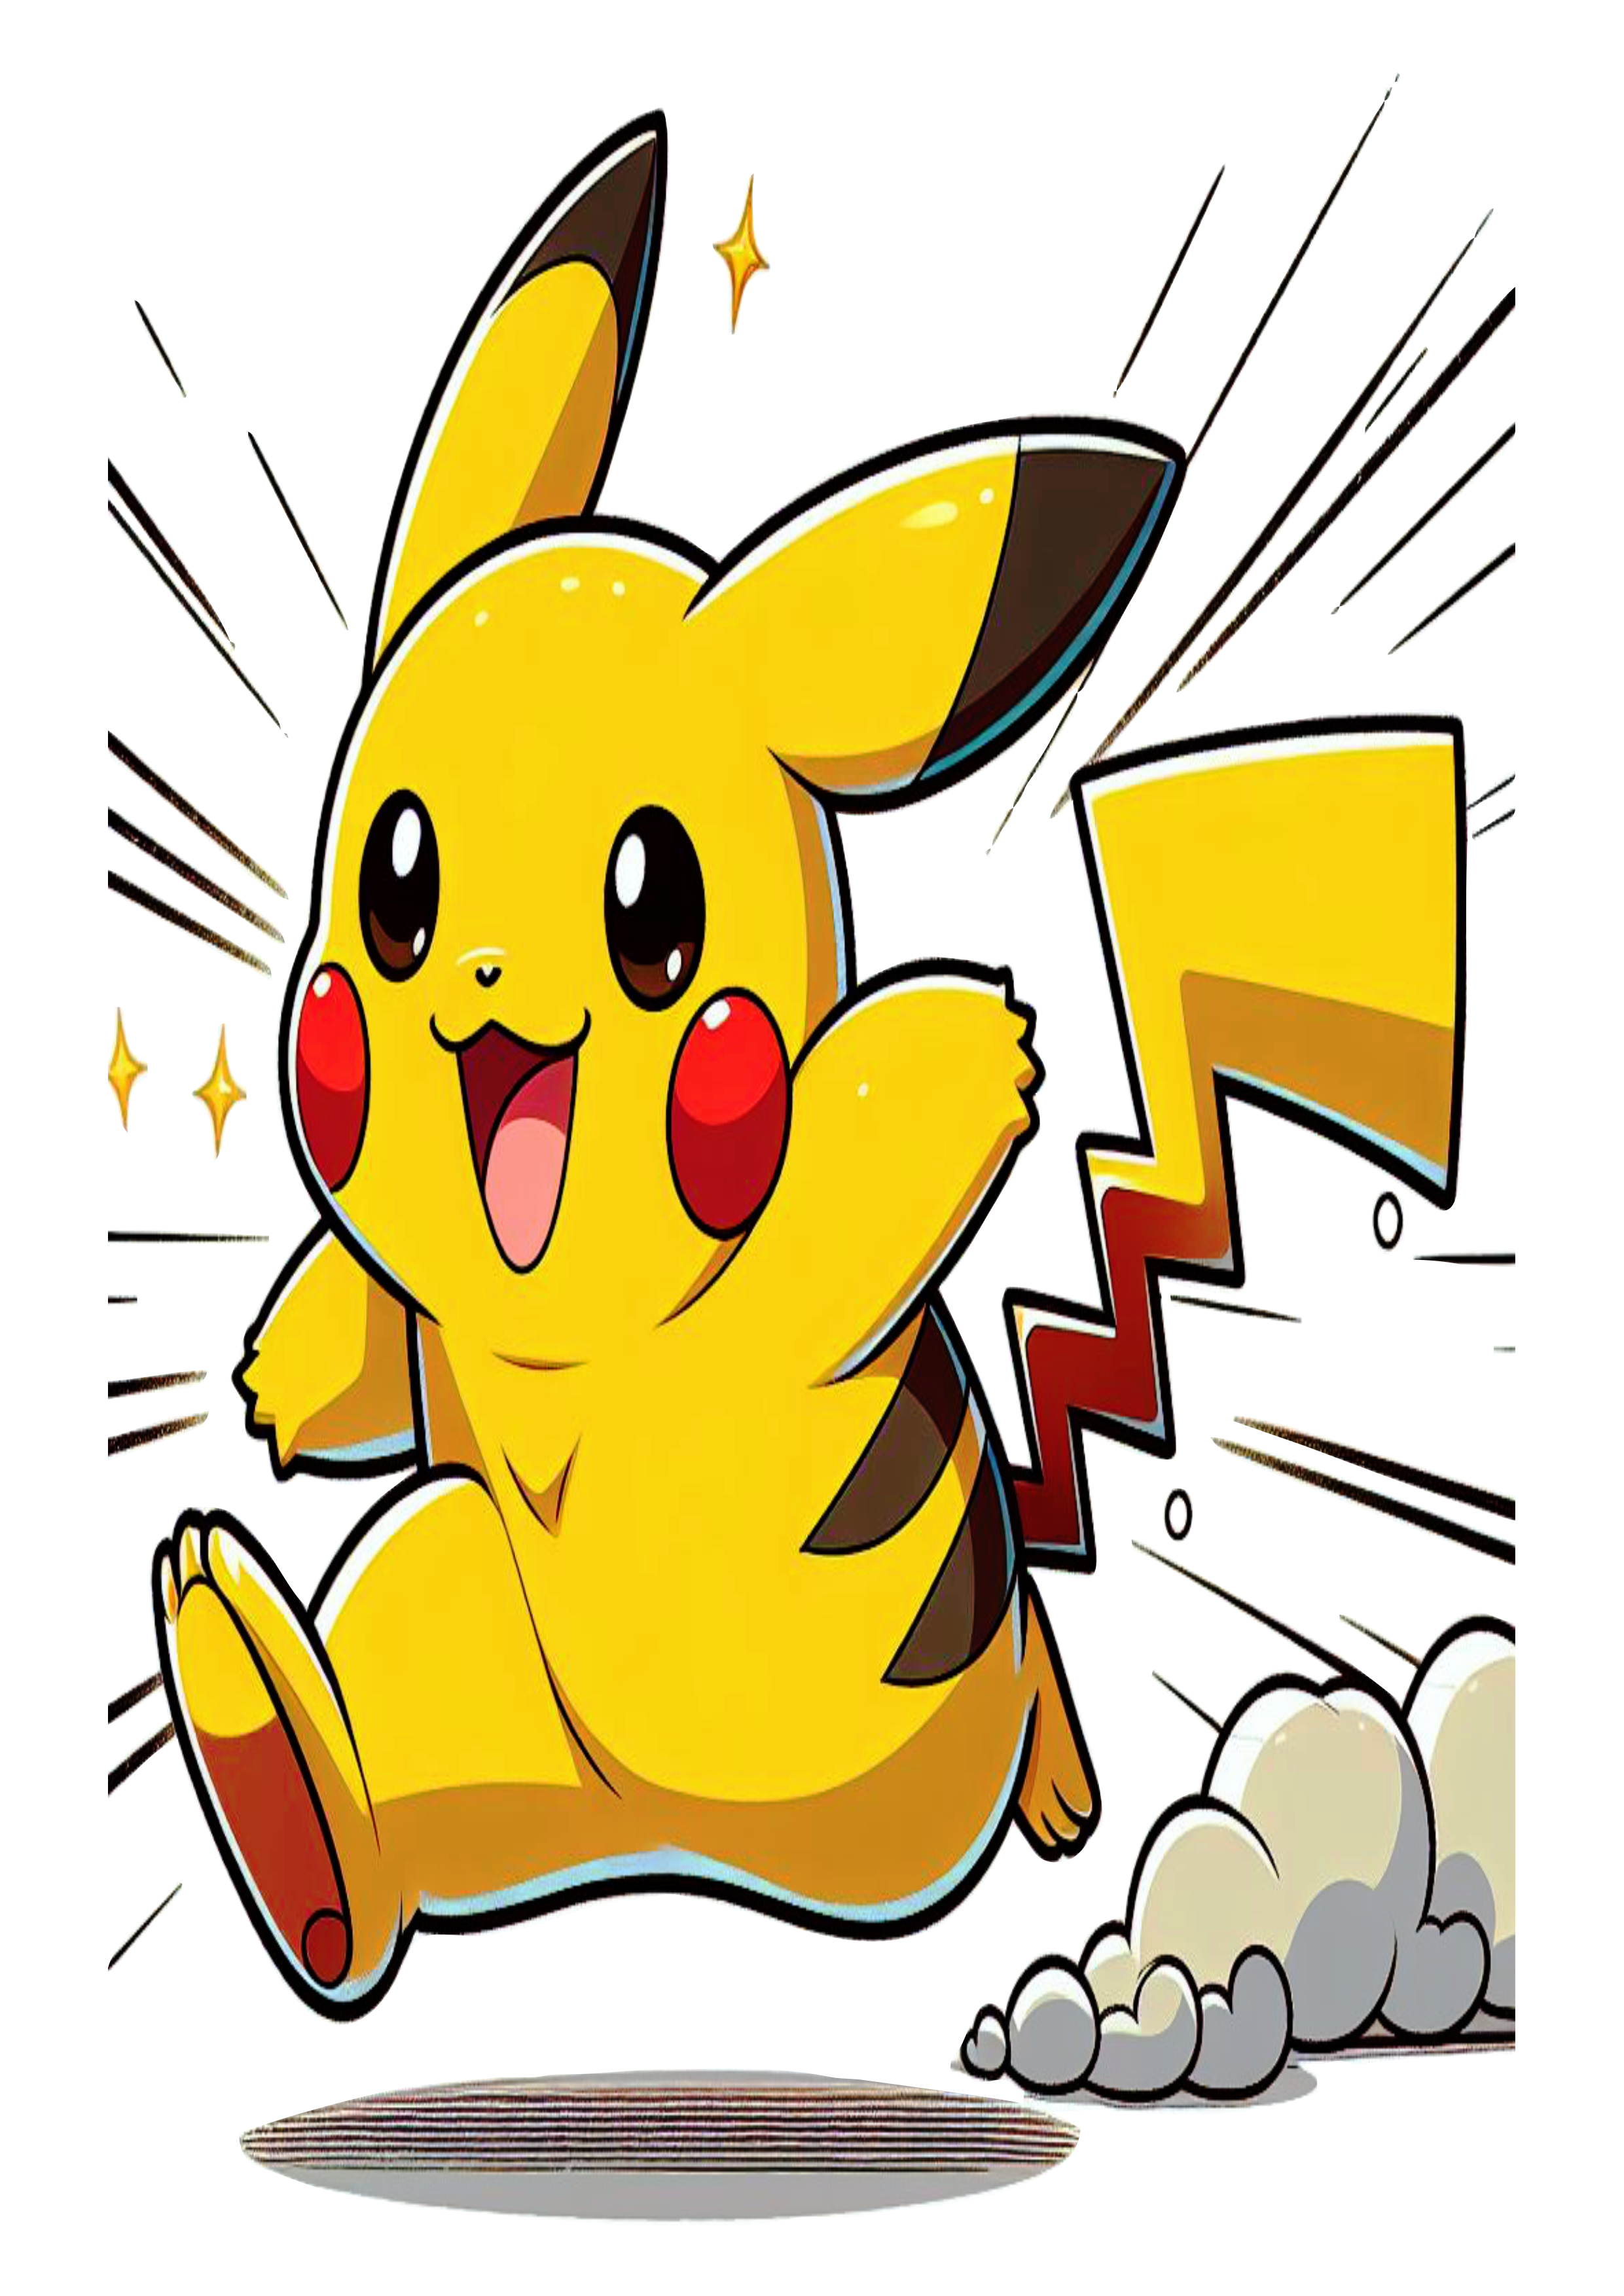 Pokémon png Pikachu anime fundo transparente desenho colorido clipart vetor ilustração